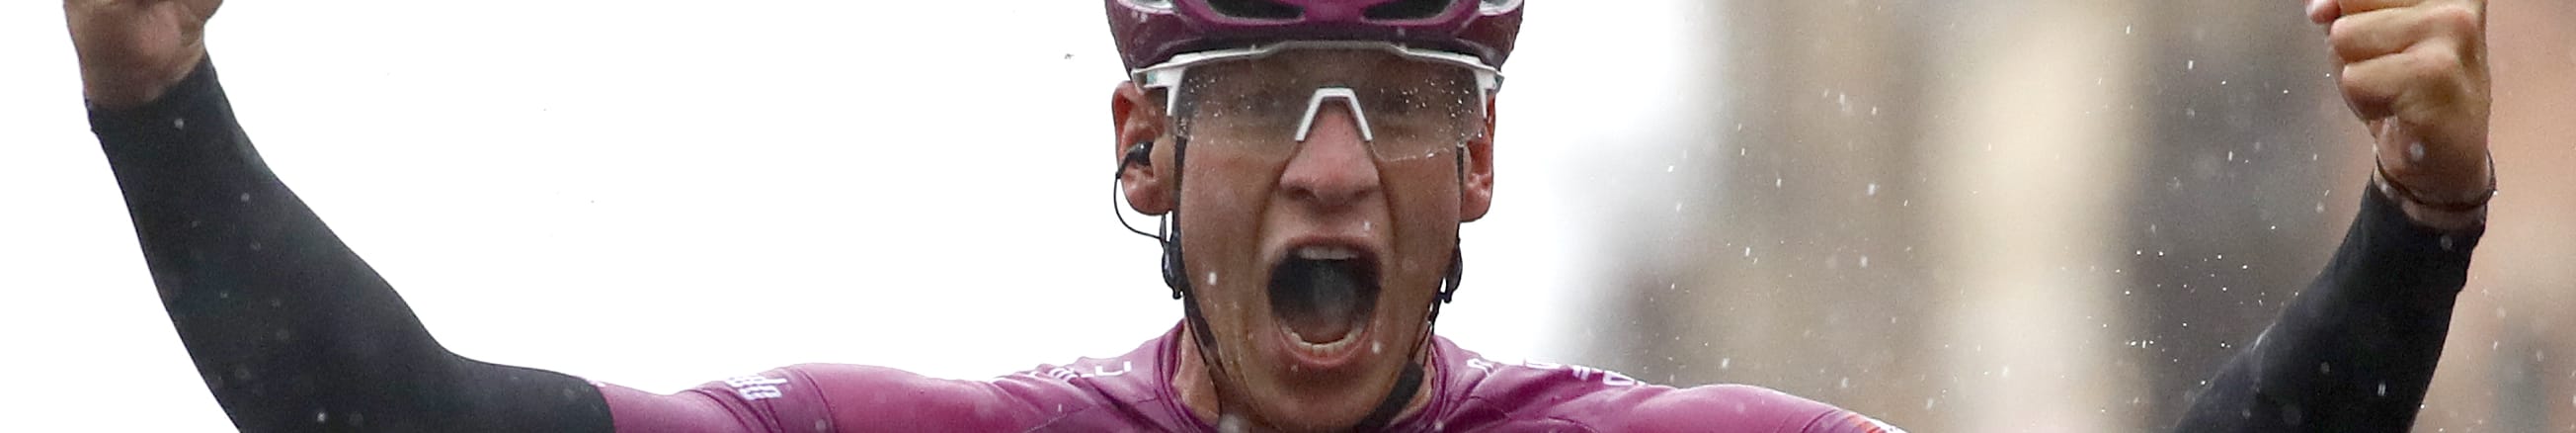 Giro d'Italia 2019, al via la seconda settimana: Ackermann vuole ipotecare la Maglia Ciclamino